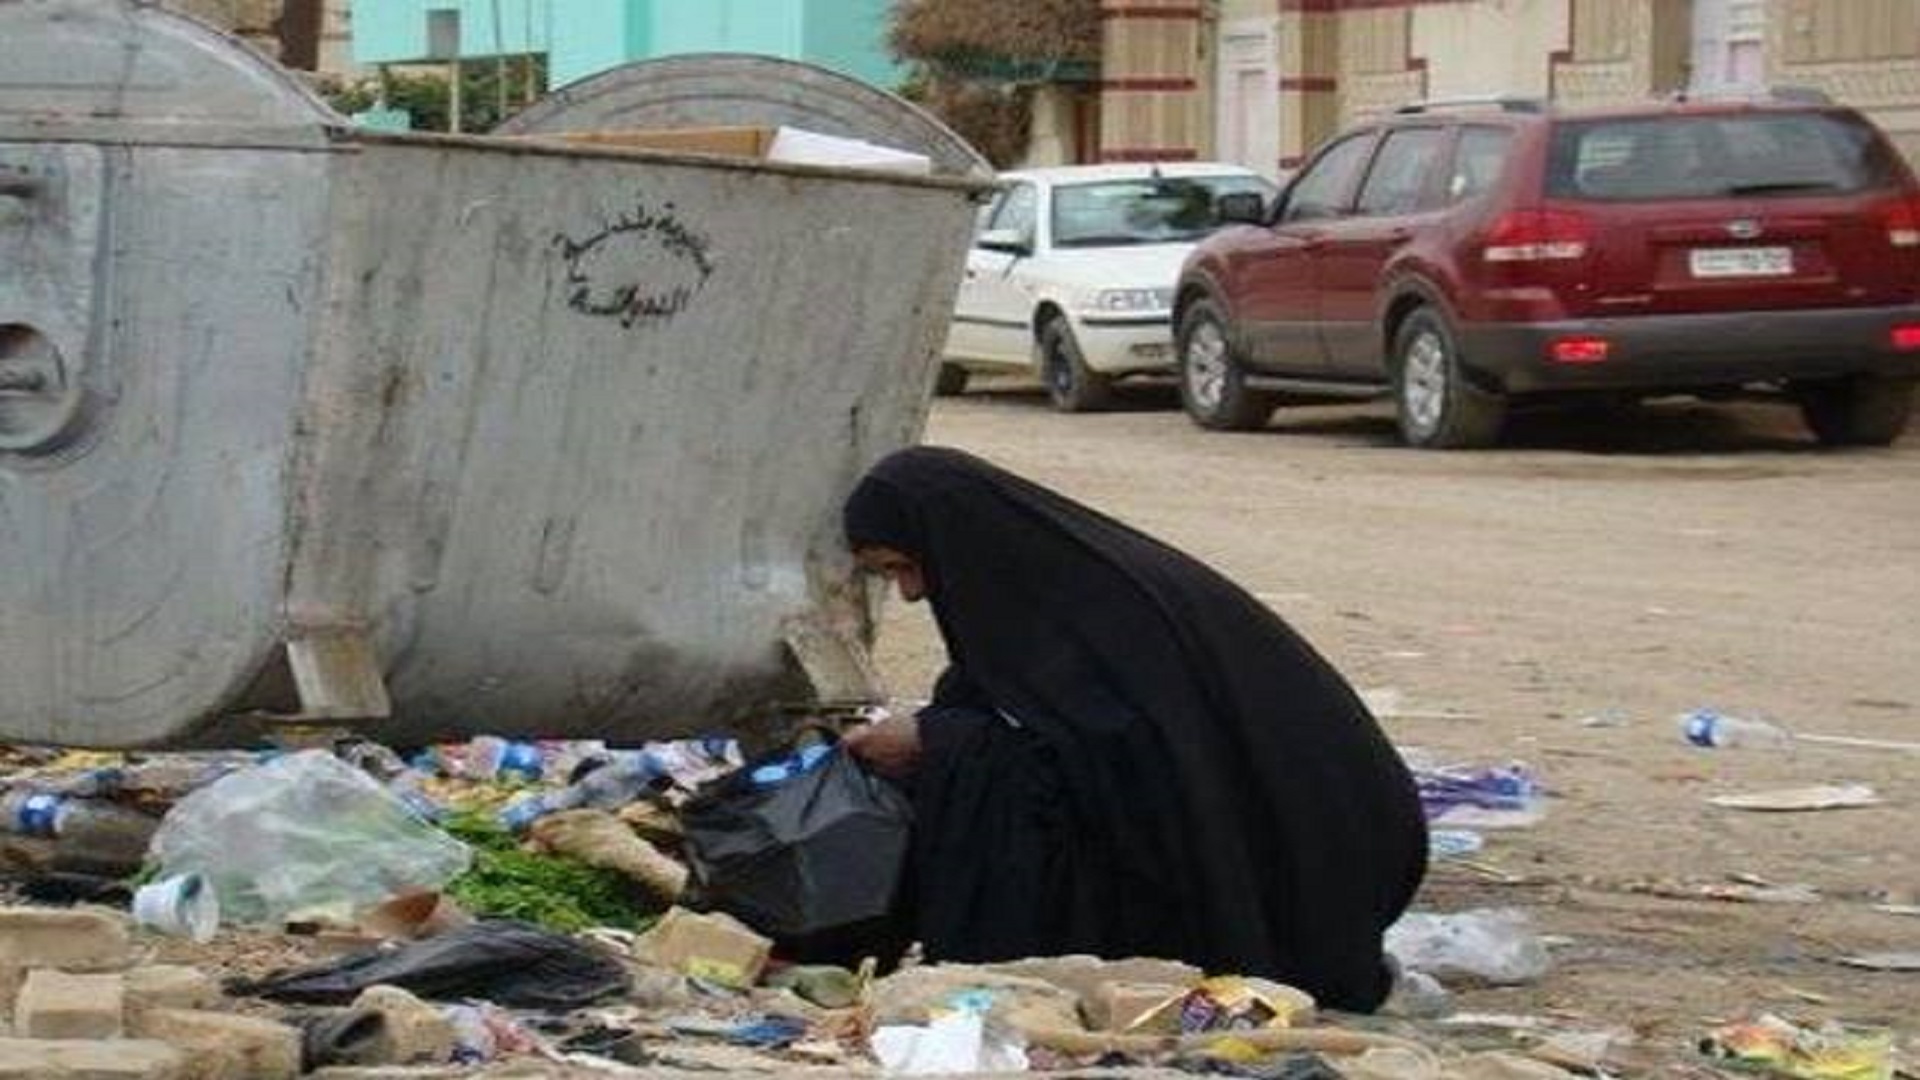 فاينانس:العراق يحتل المرتبة 80 عالميا وفق تصنيف الأكثر الدول فقراً